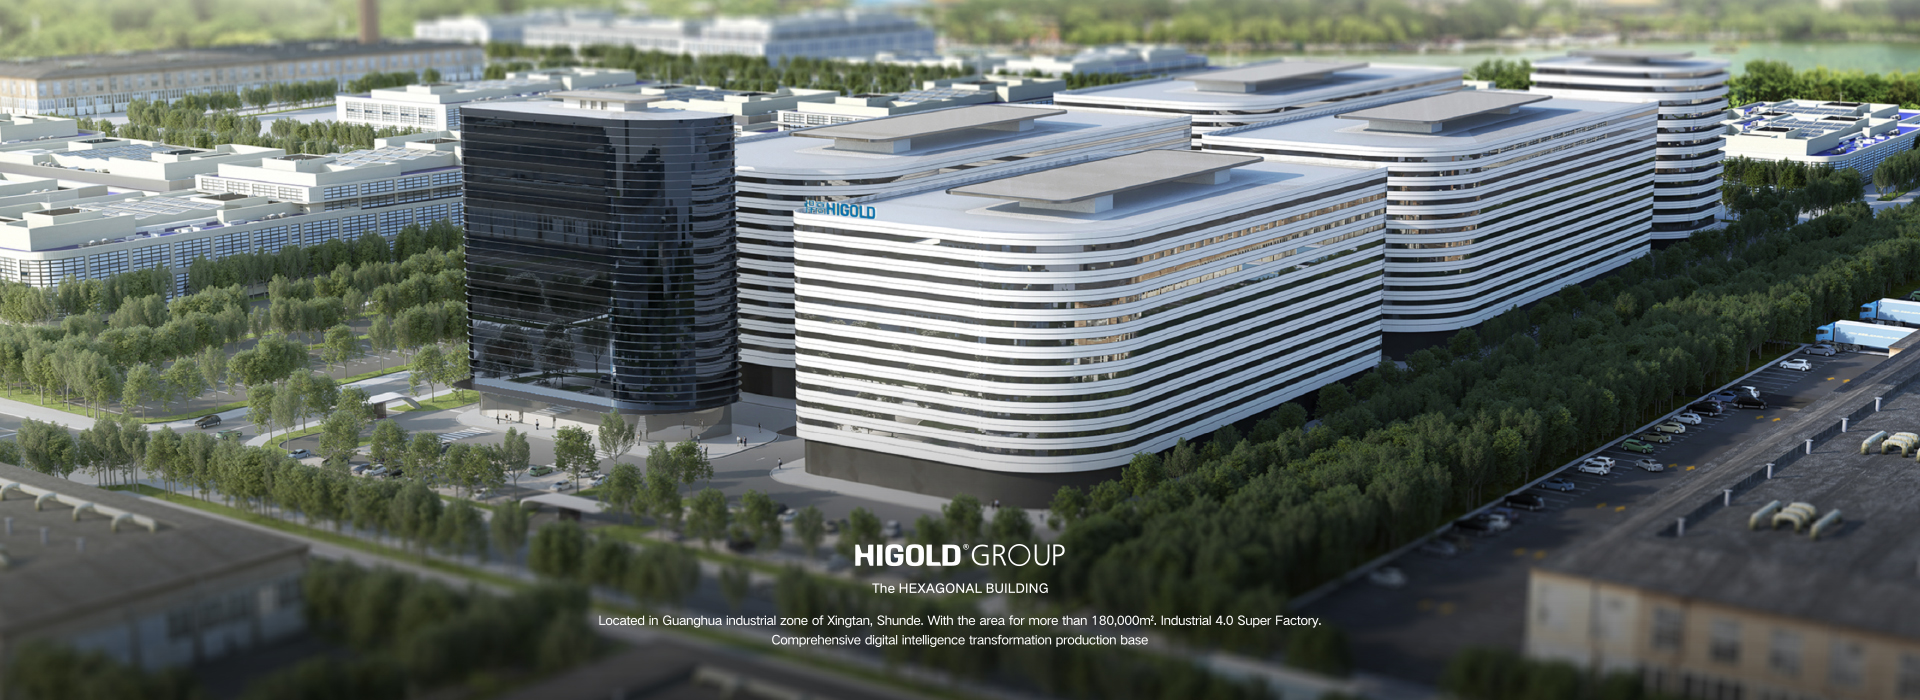 Higold nieuwe productiebasis